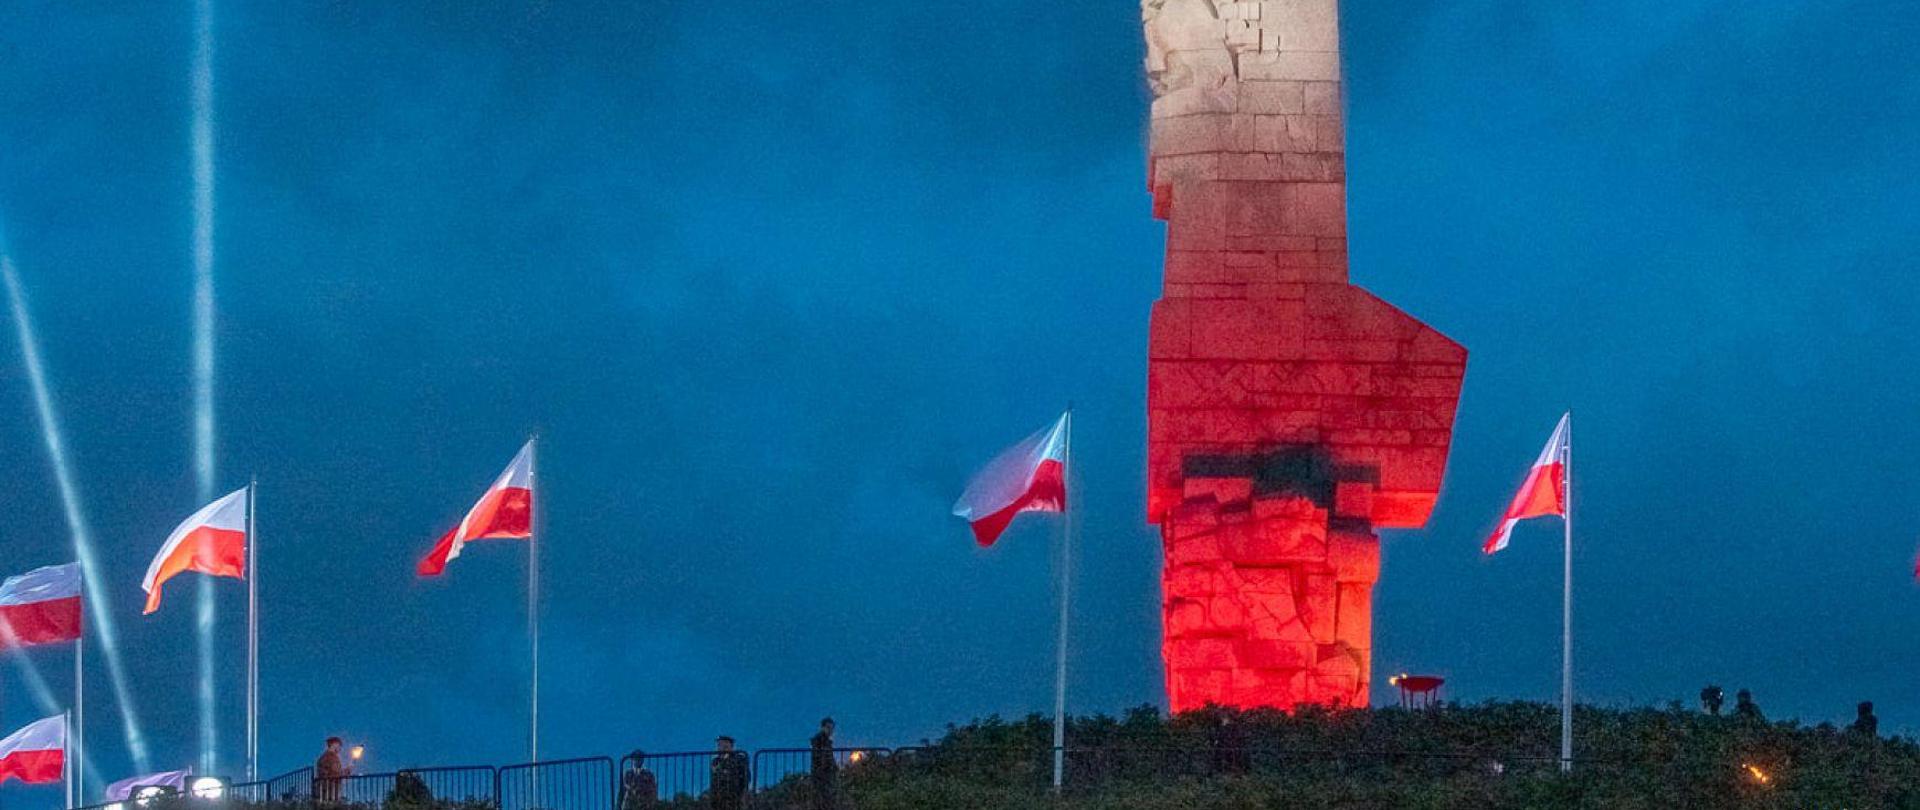 pomnik Westerplatte podświetlony na biało czerwono, 